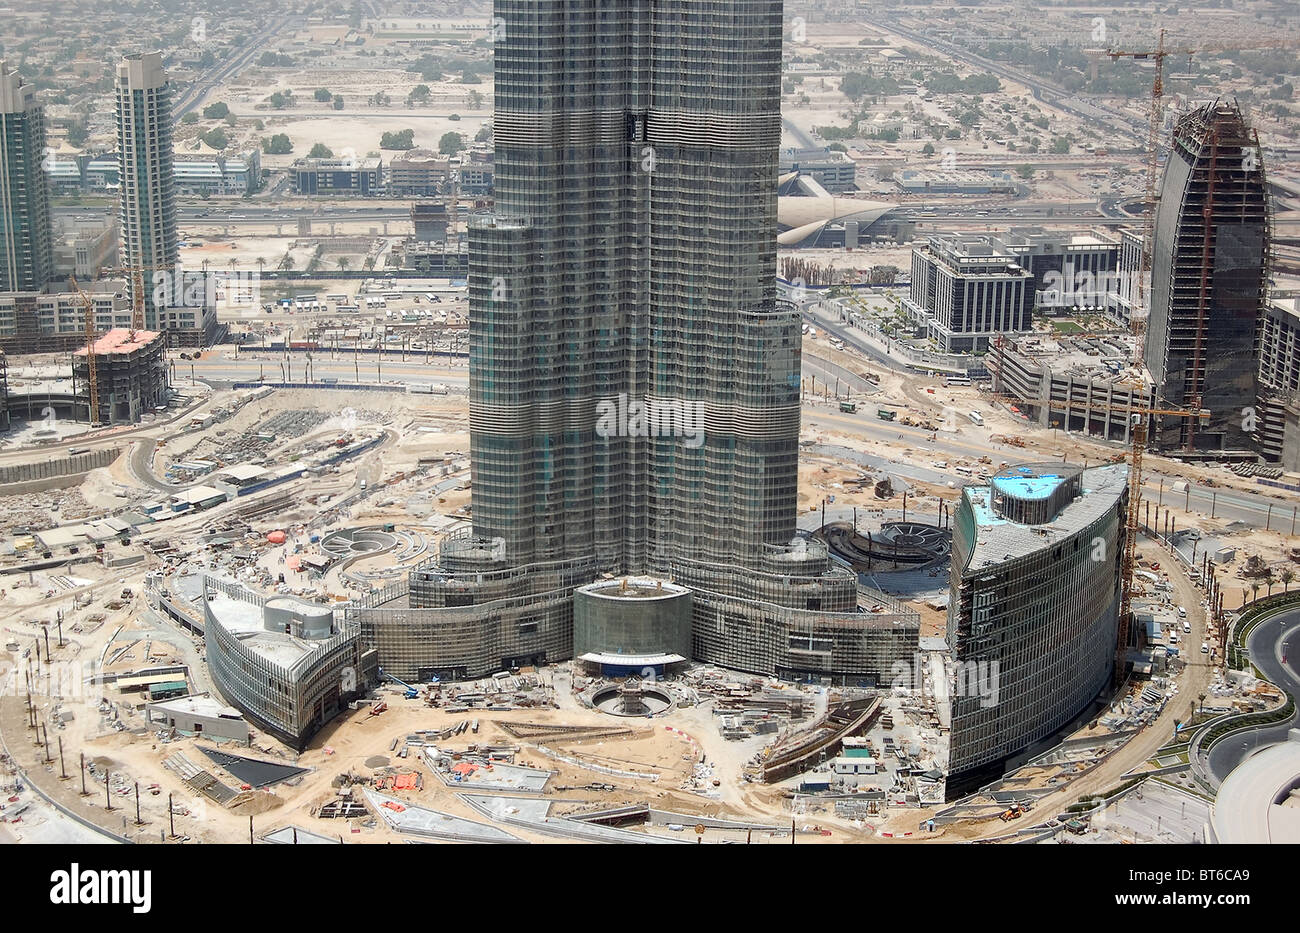 La fase de acabado de la construcción de Burj Dubai (Burj Khalifa), el rascacielos más alto del mundo, Dubai, Emiratos Árabes Unidos. Foto de stock